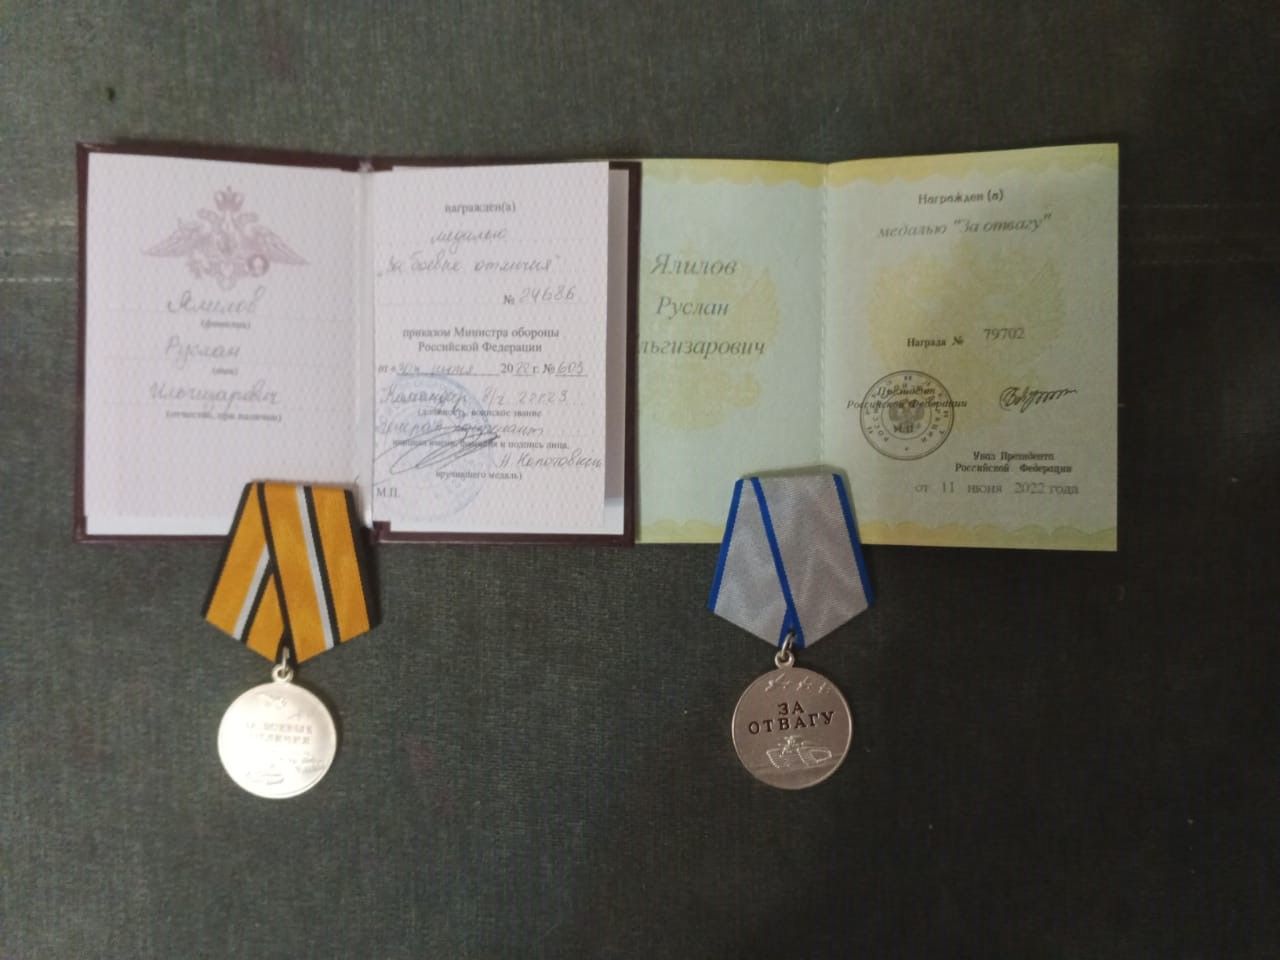 Проживающий в селе Ютаза Руслан Ялилов награжден двумя медалями — «За отвагу» и «За боевые отличия»